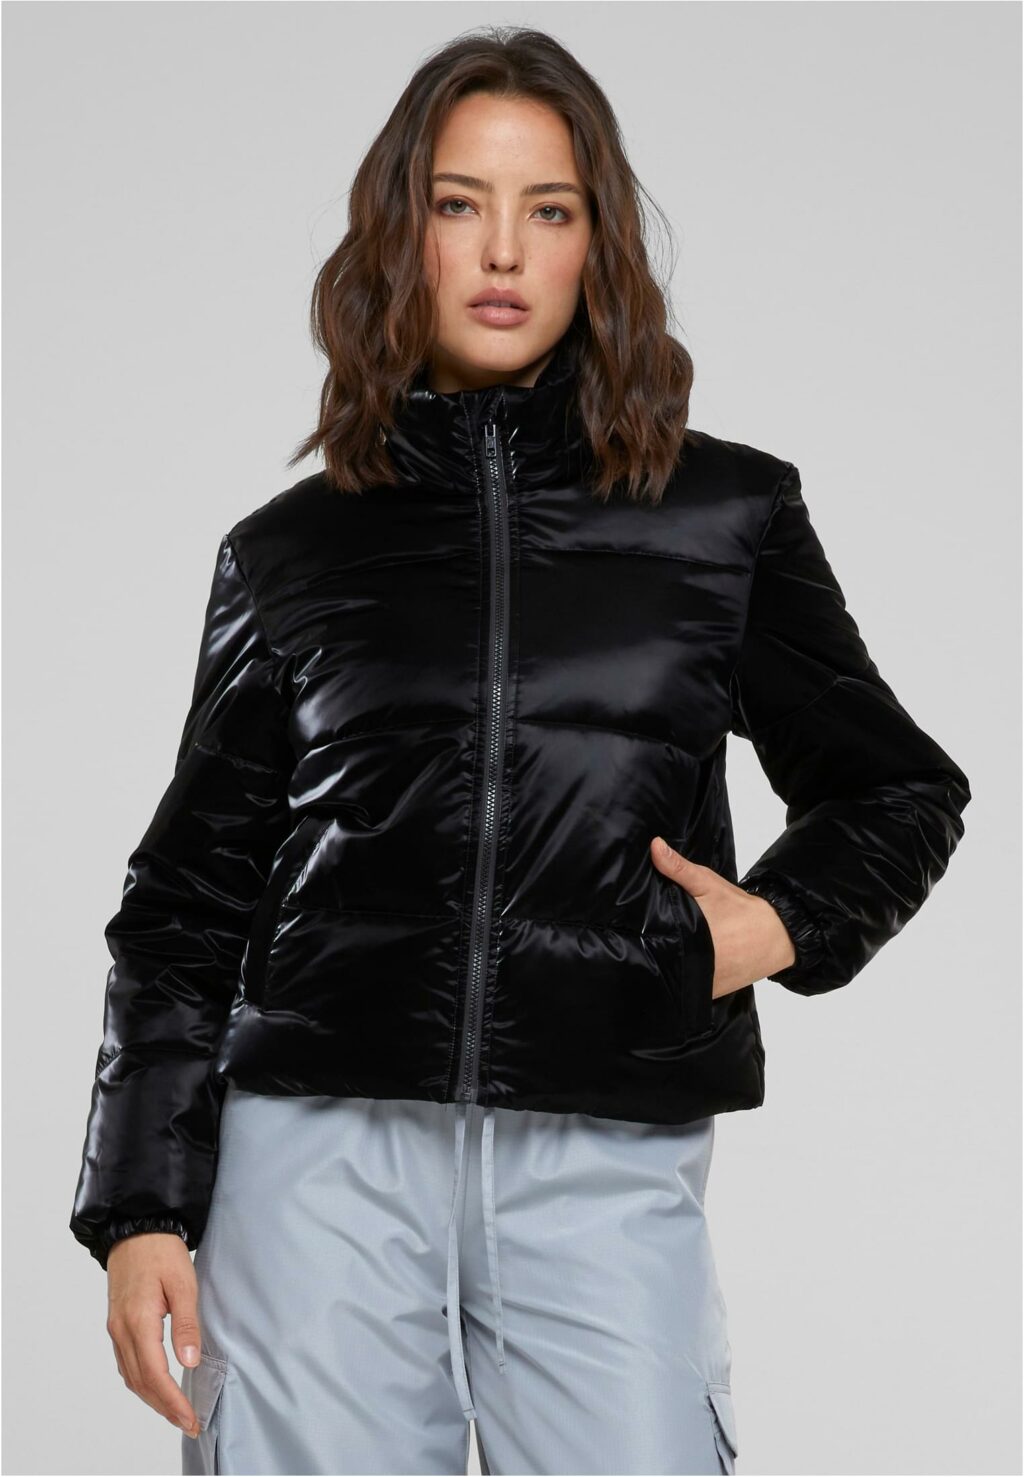 Urban Classics Ladies Shark Skin Puffer Jacket black TB6146